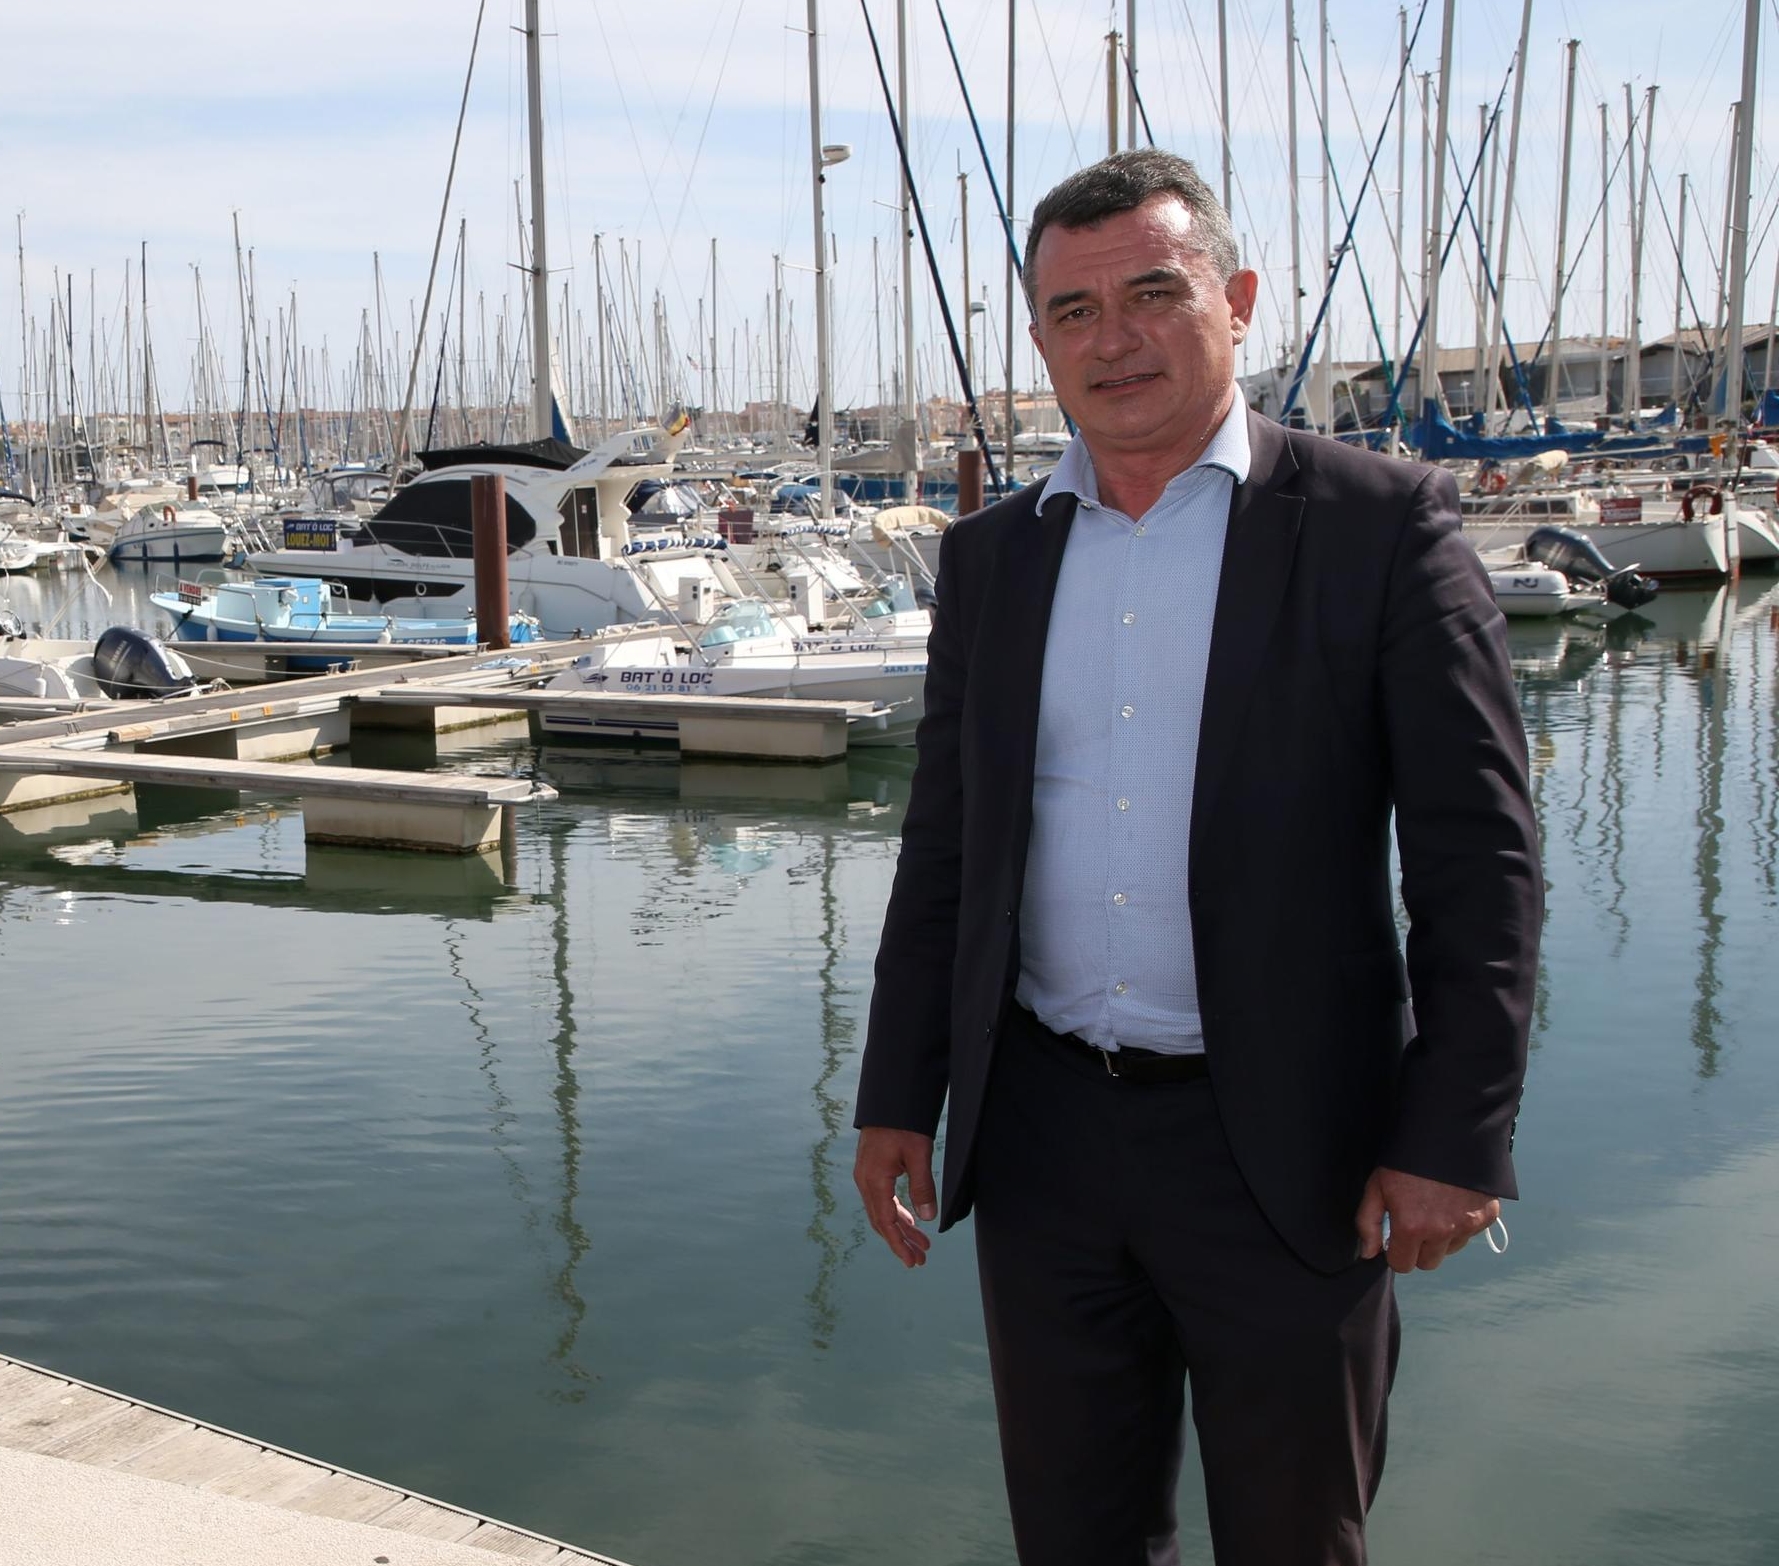 Gilles d’Ettore, maire d'Agde, dort en prison, victime consentante d’une invraisemblable arnaque ésotérique. SIPA/Alain Robert